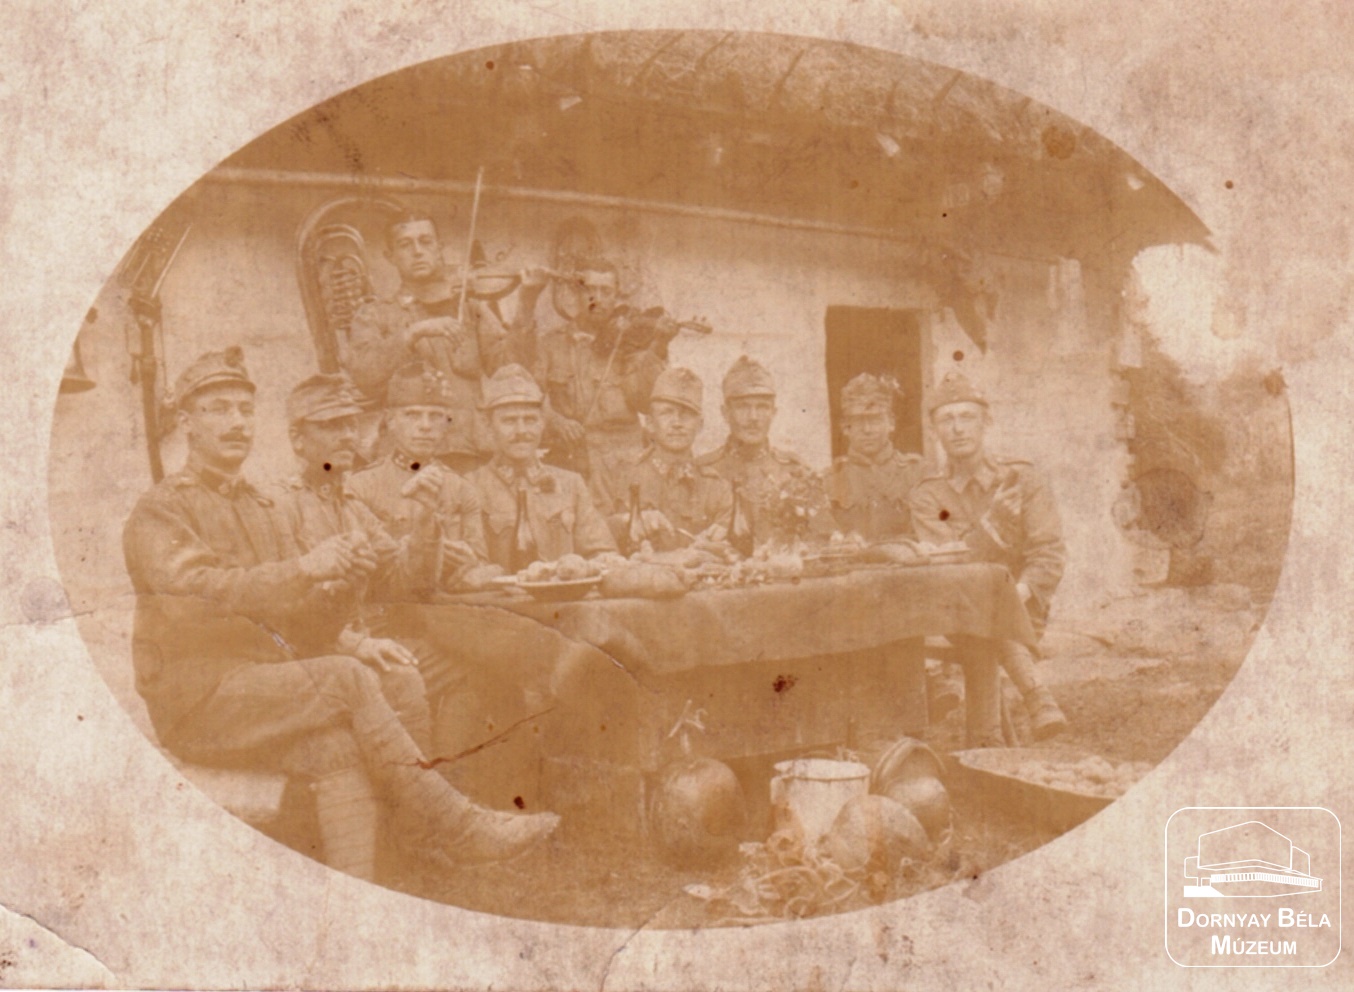 I. Világháborús kép. Terített tábori asztal mellett (Dornyay Béla Múzeum, Salgótarján CC BY-NC-SA)